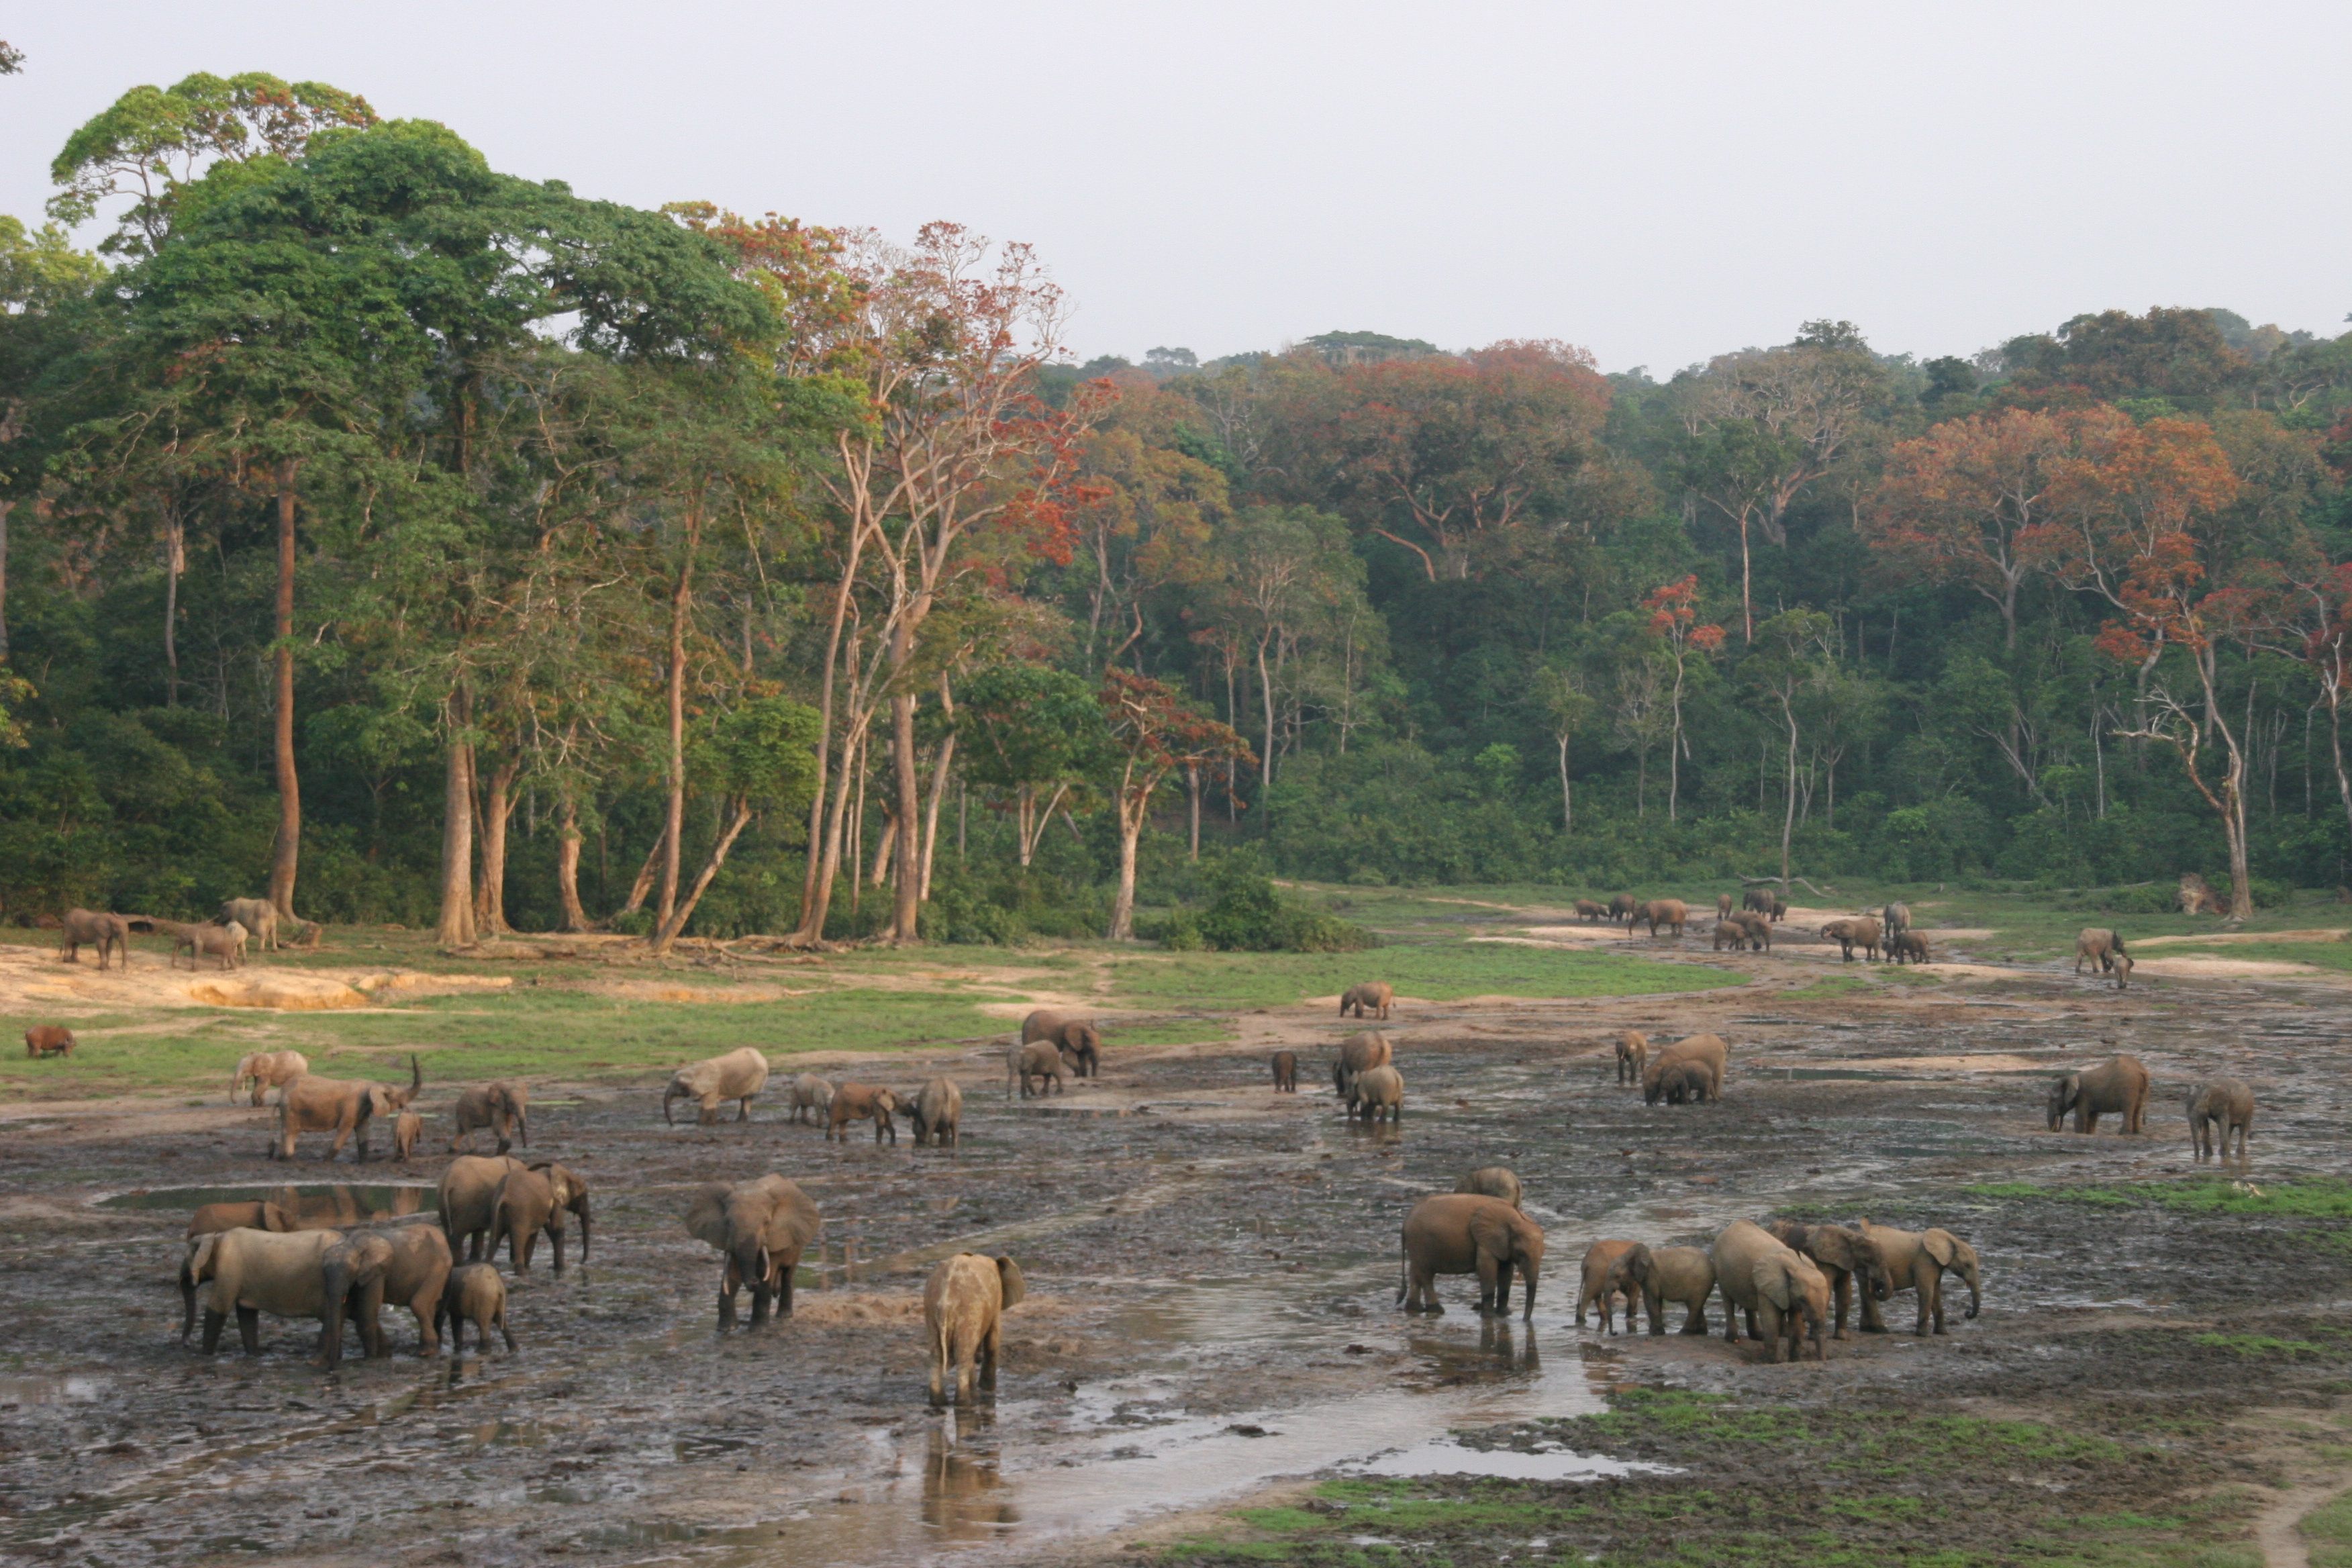 Éléphants s’attroupant dans une clairière, photographie par David Weiner (CC BY-NC 2.0)